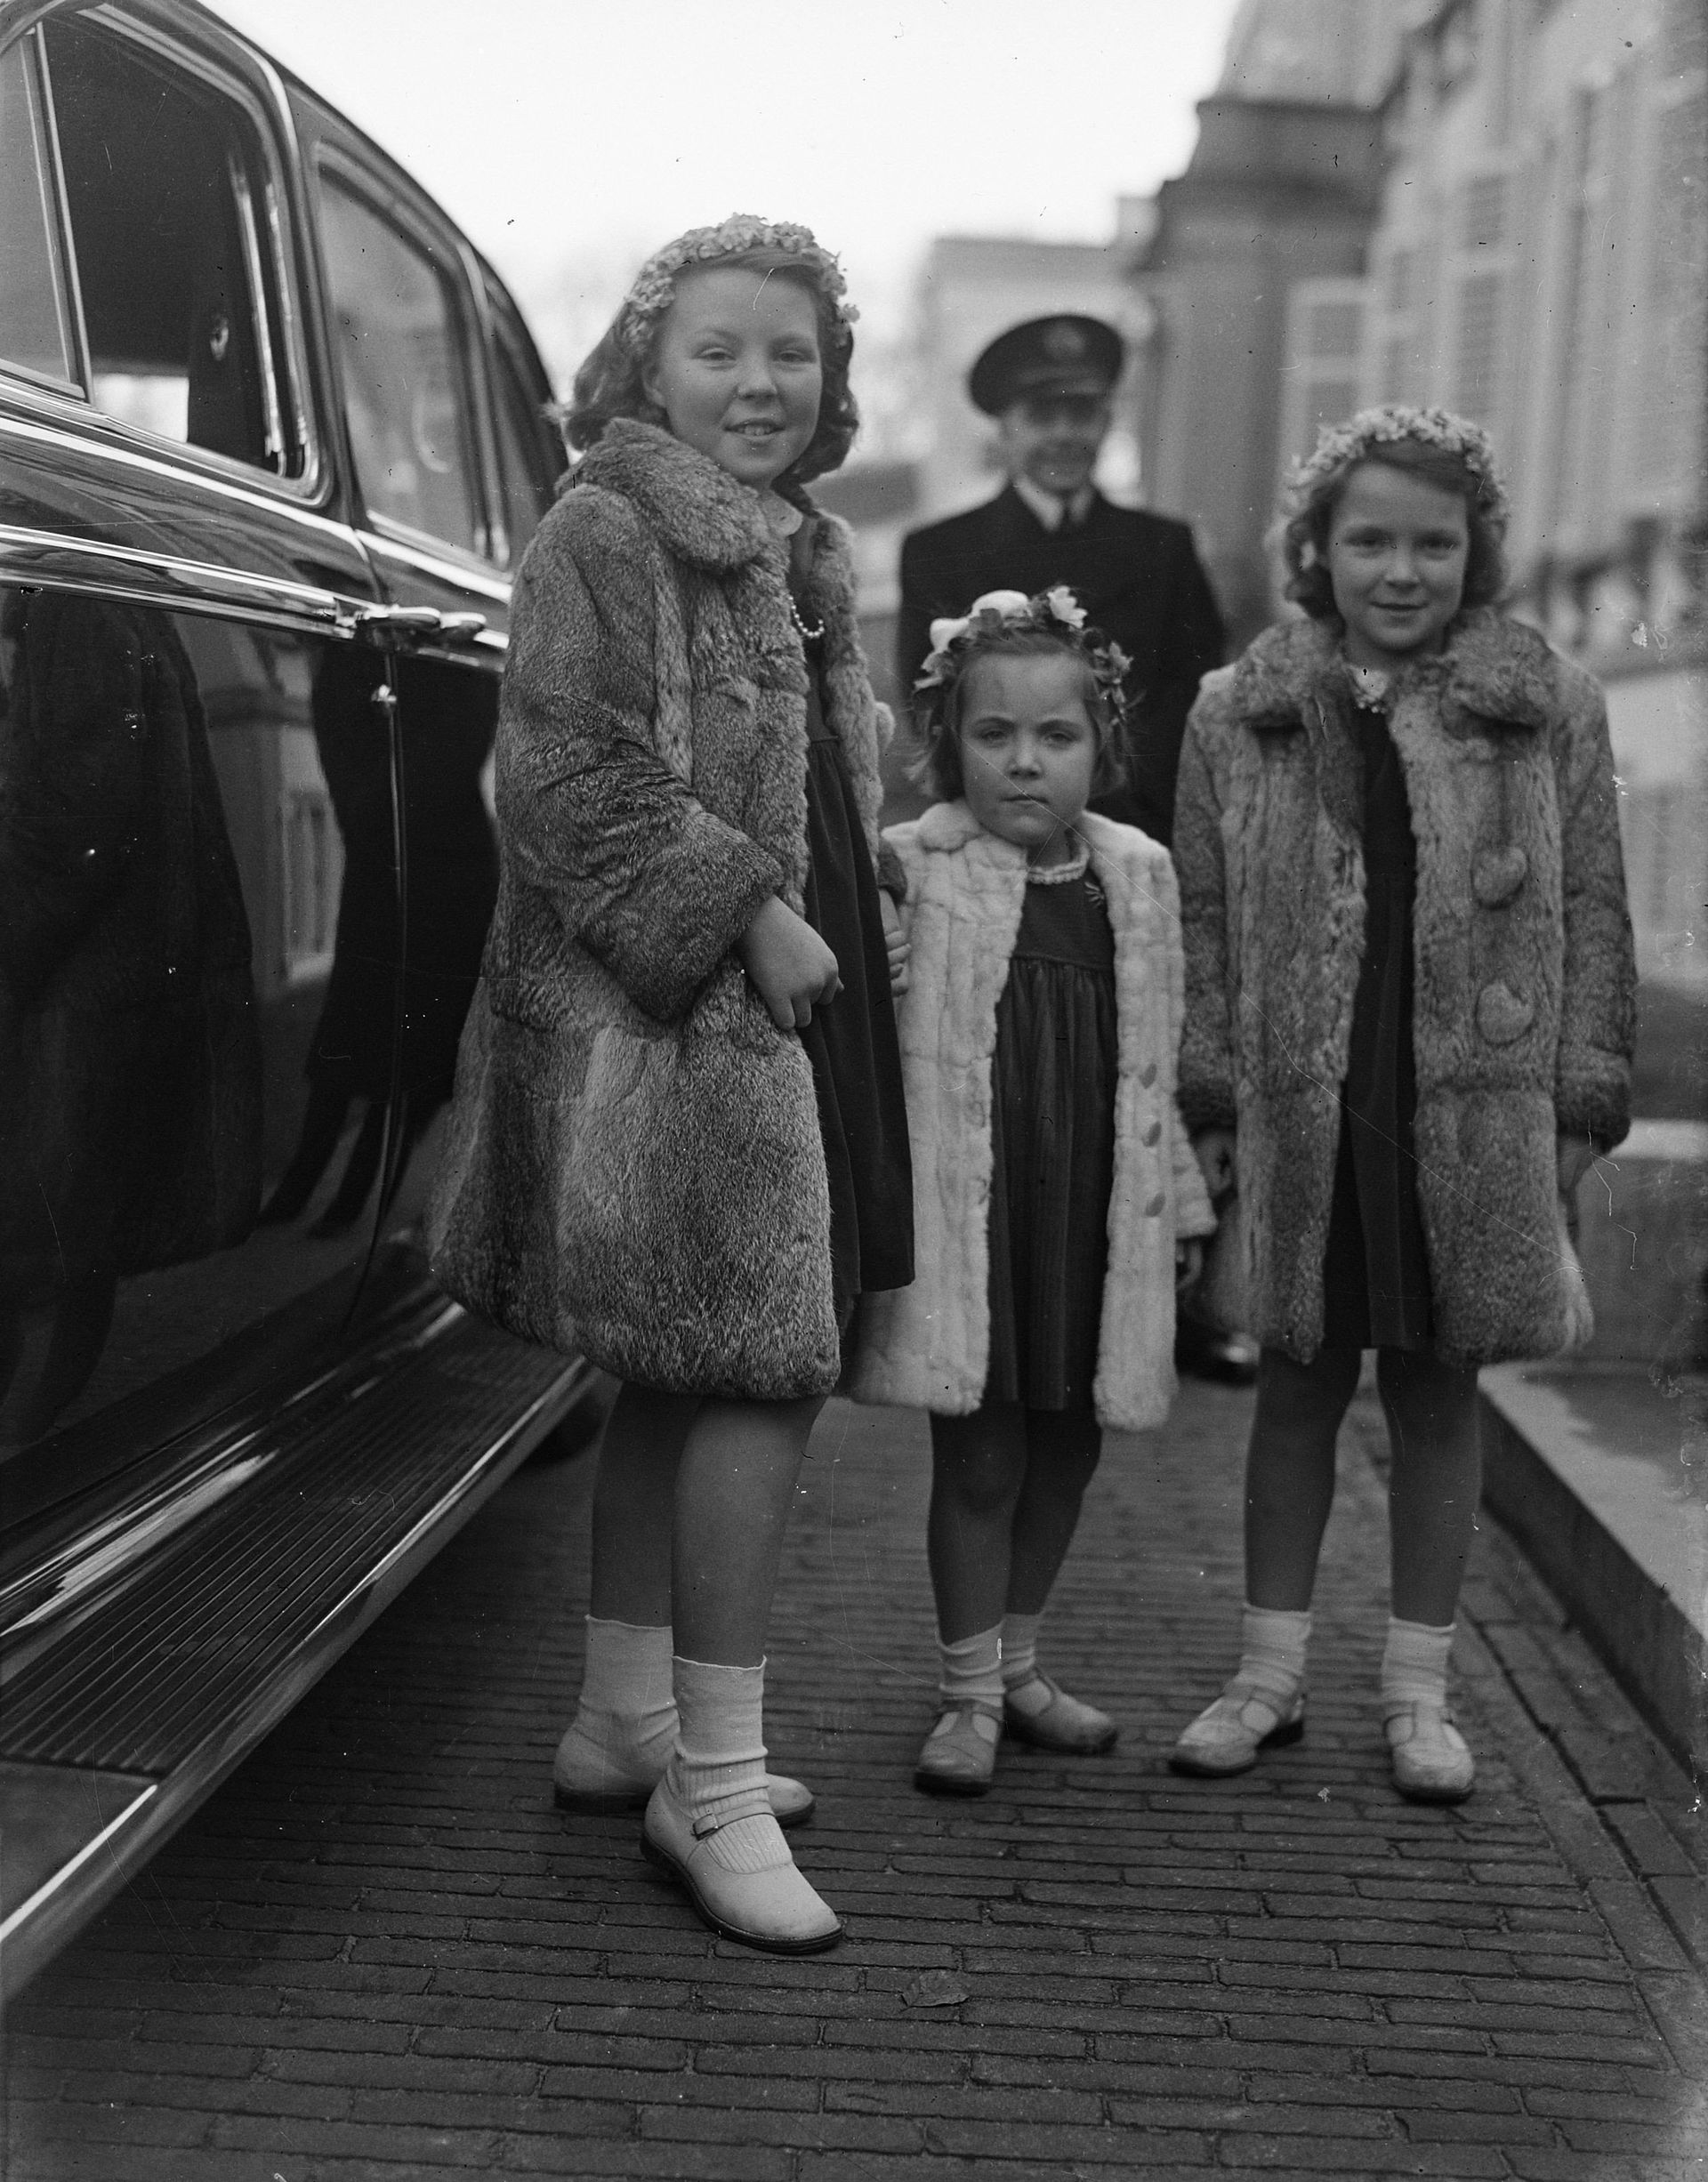 De prinsessen Beatrix, Margriet en Irene op 31 januari 1948. Op deze dag viert prinses Beatrix haar